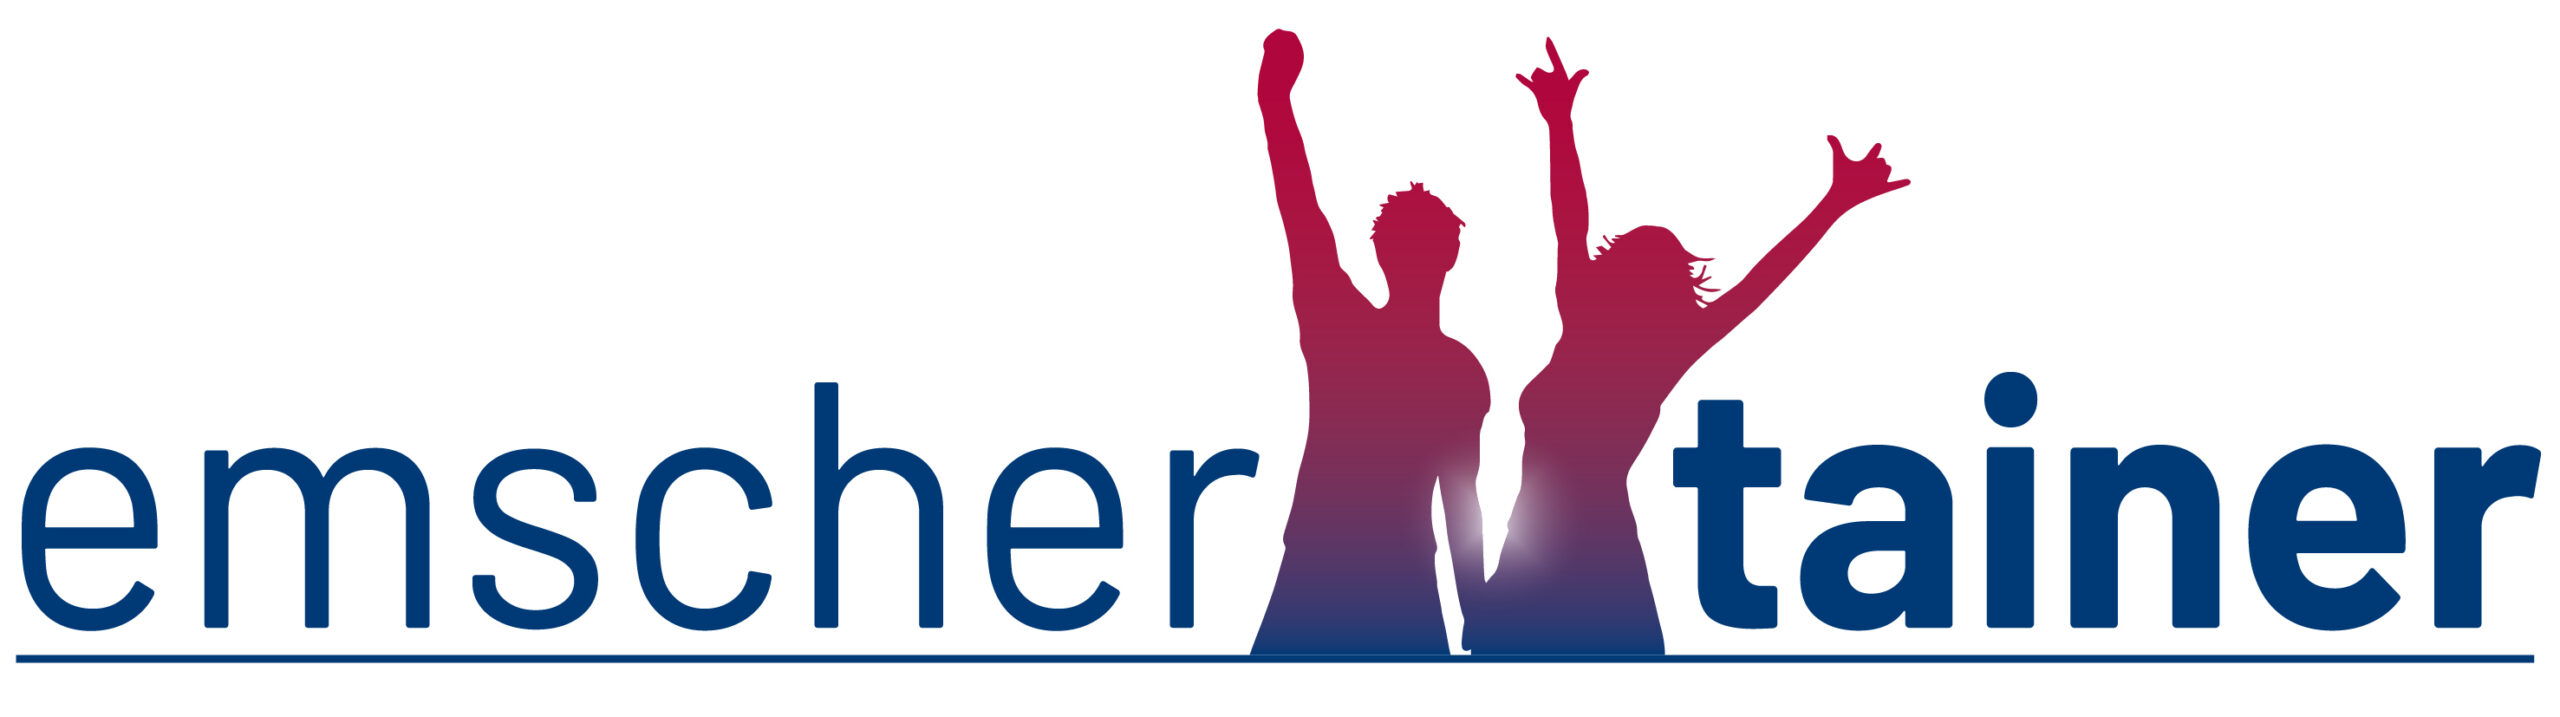 emschertainer Logo